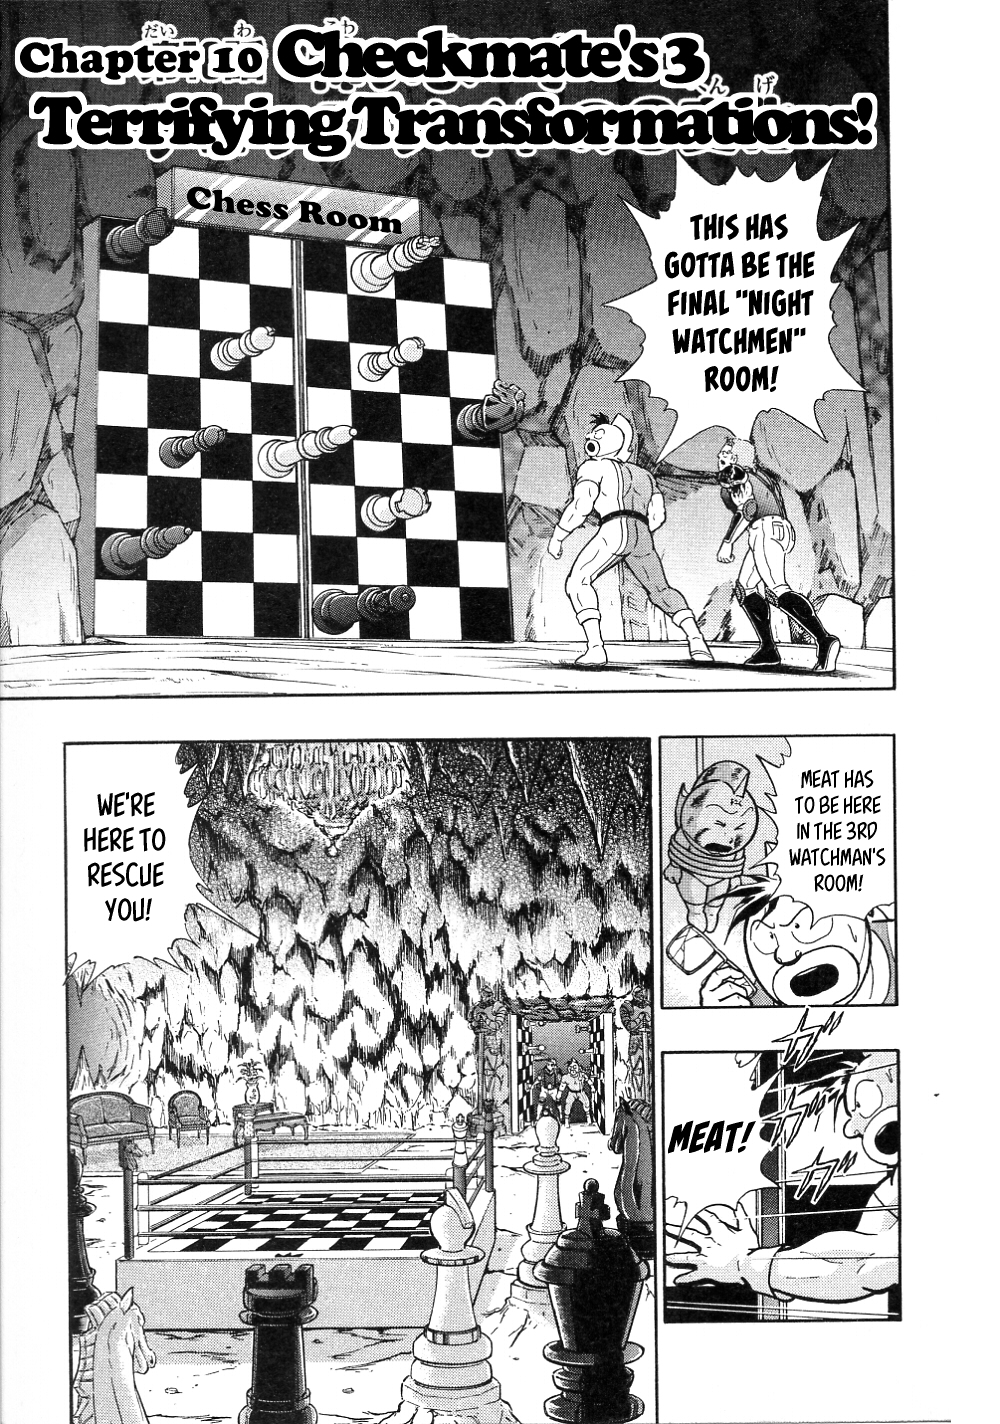 Kinnikuman II Sei: All Choujin Daishingeki Vol. 1 Ch. 10 Checkmate's 3 Terrifying Transformations!